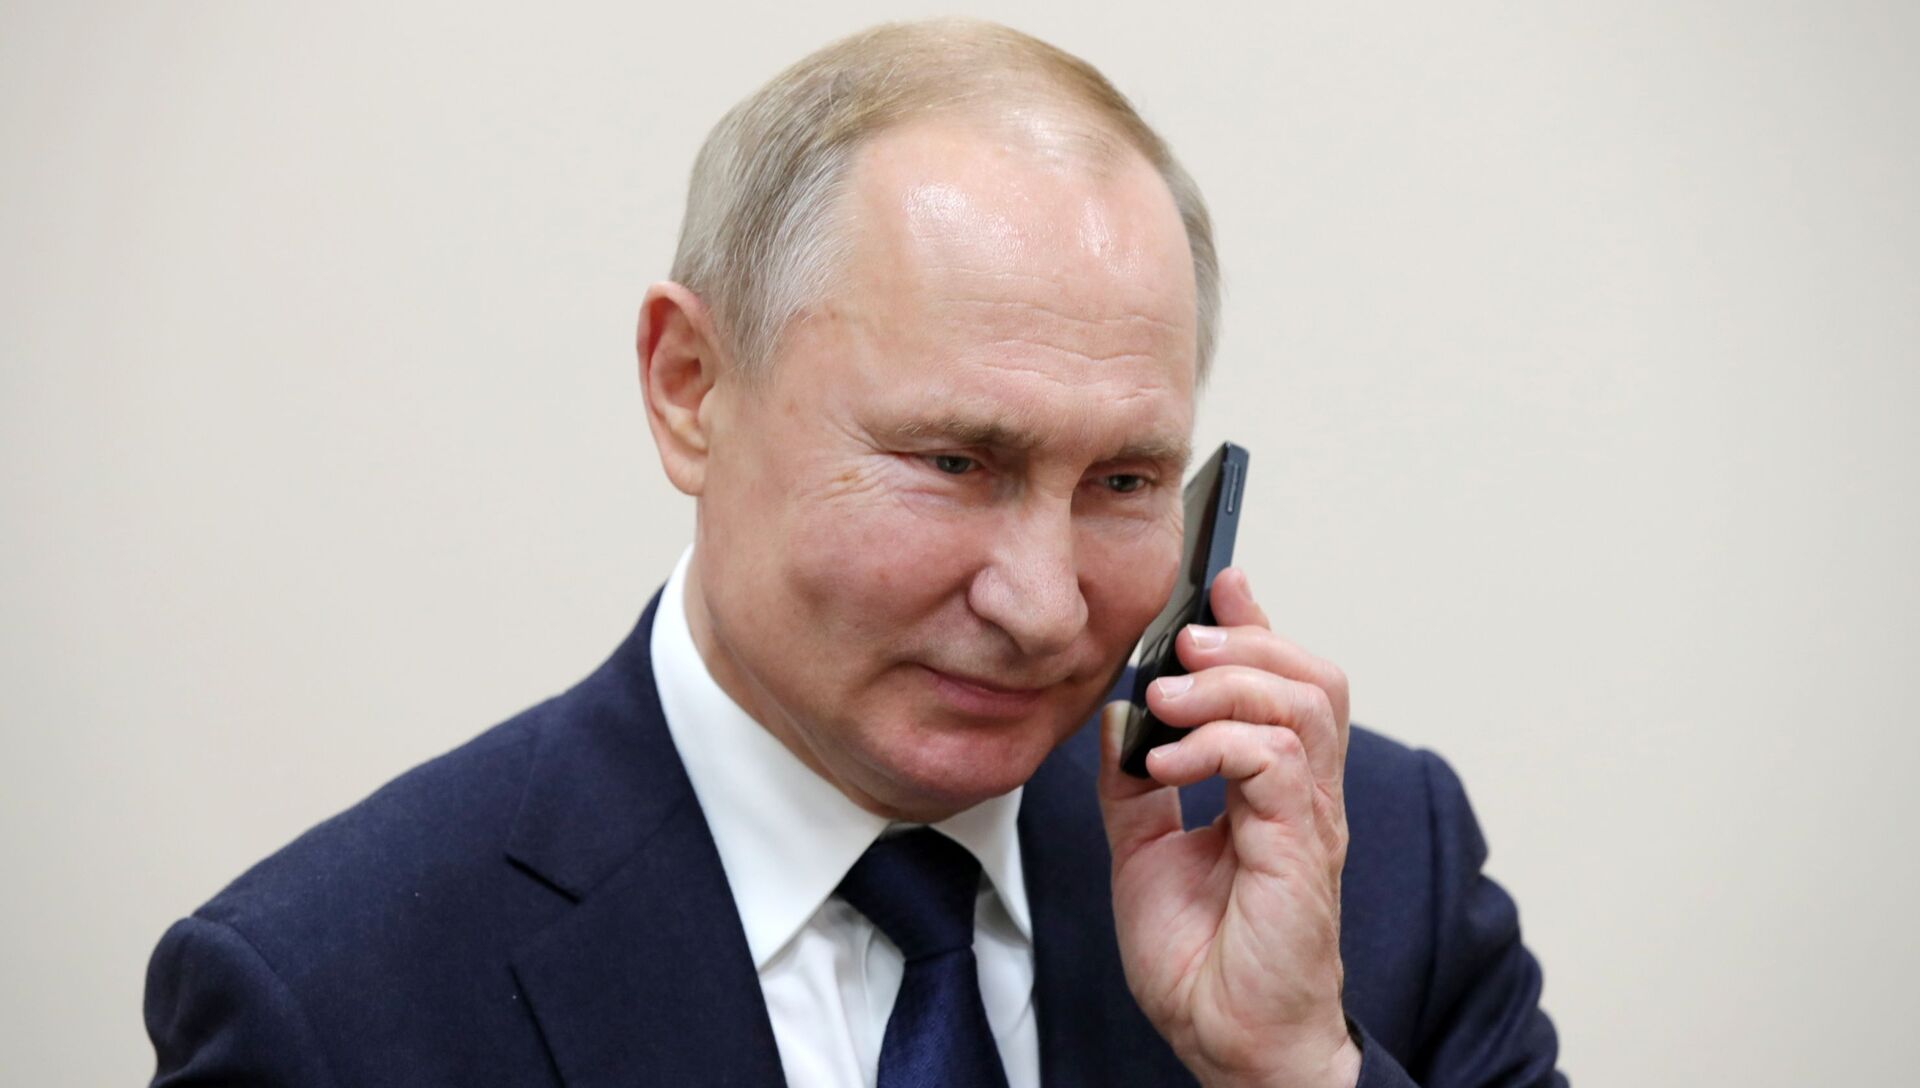 Песков анонсировал международный телефонный разговор Путина